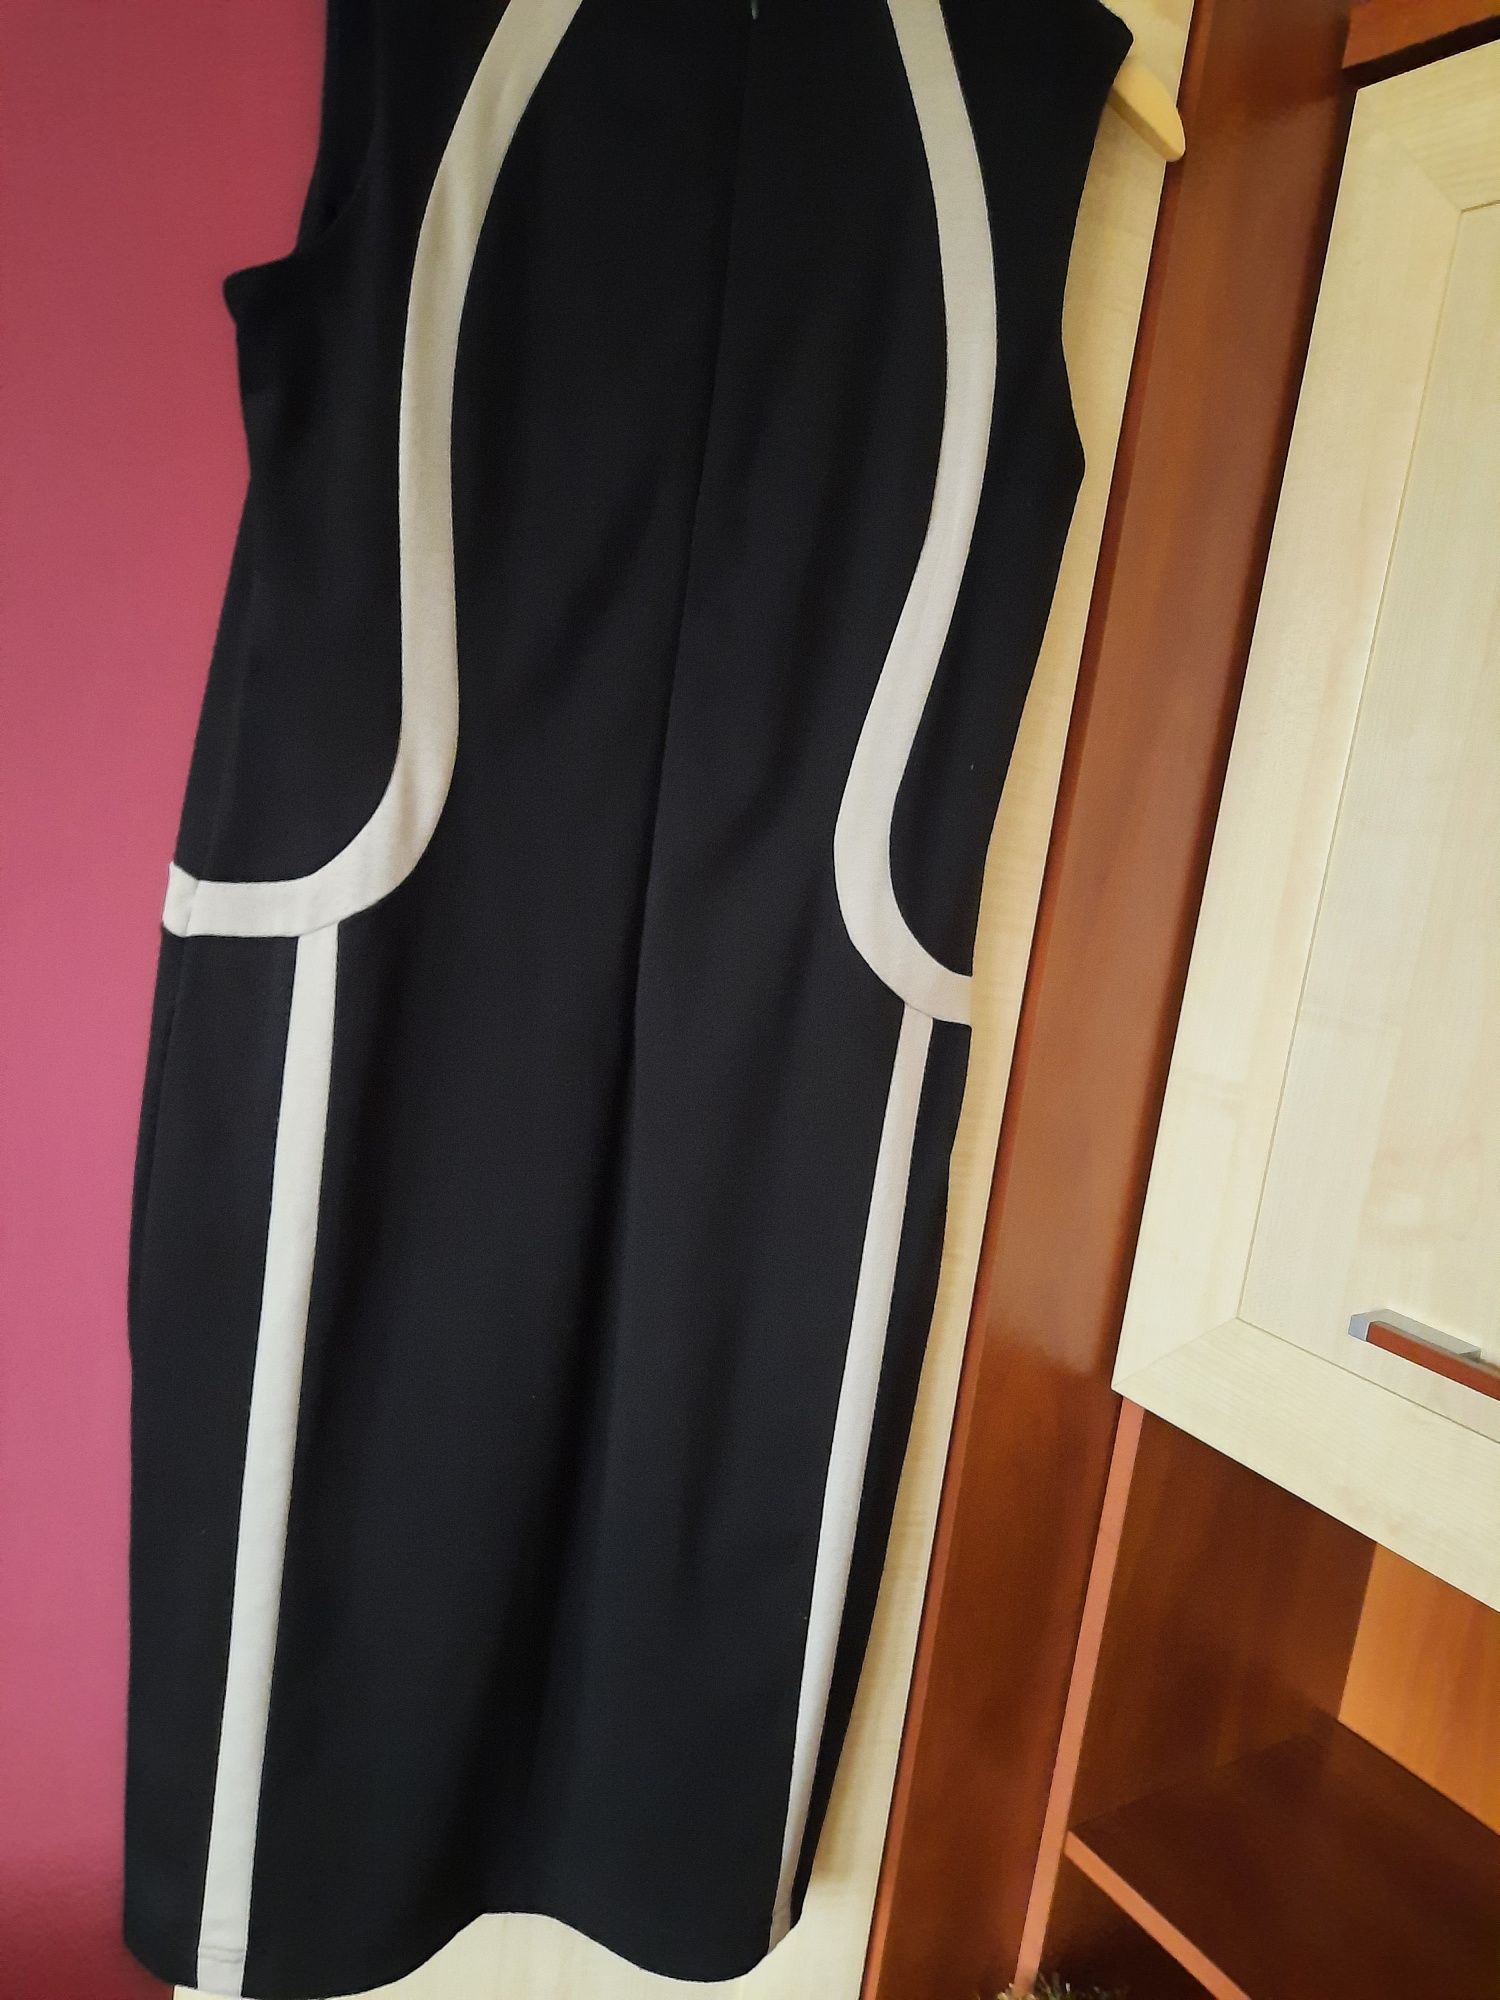 Sukienka dzianinowa czaro beżowa rozmiar 40  bardzo fajna polecam